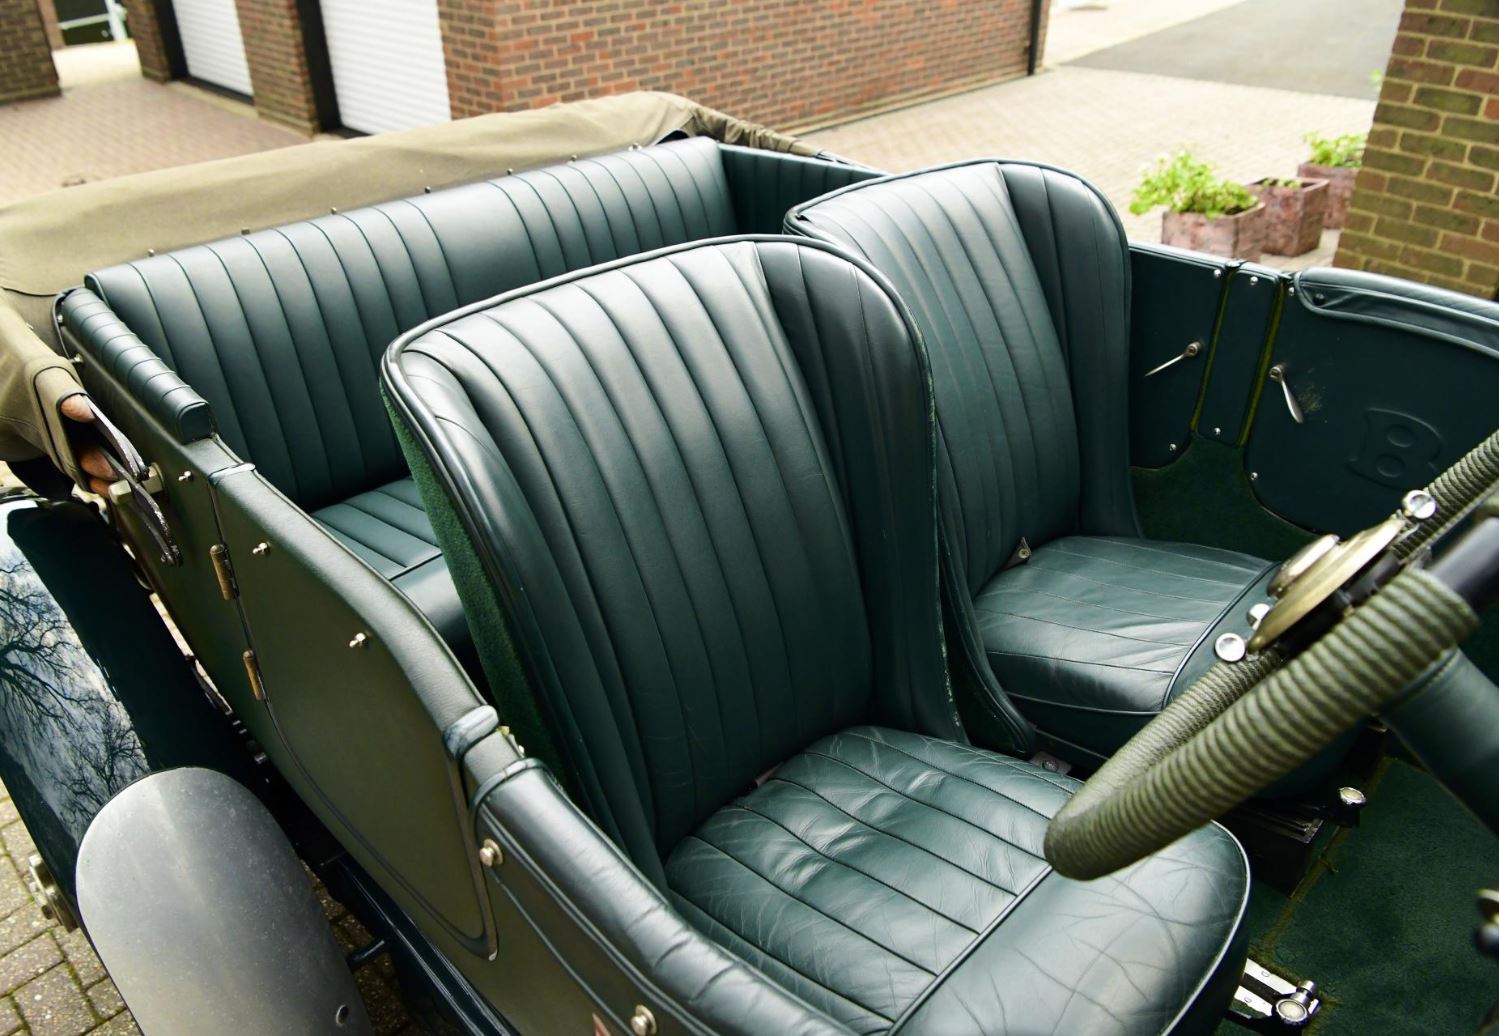 Bentley speed 8 peterson lemans special onm4bz71xbavkxlpnujkc